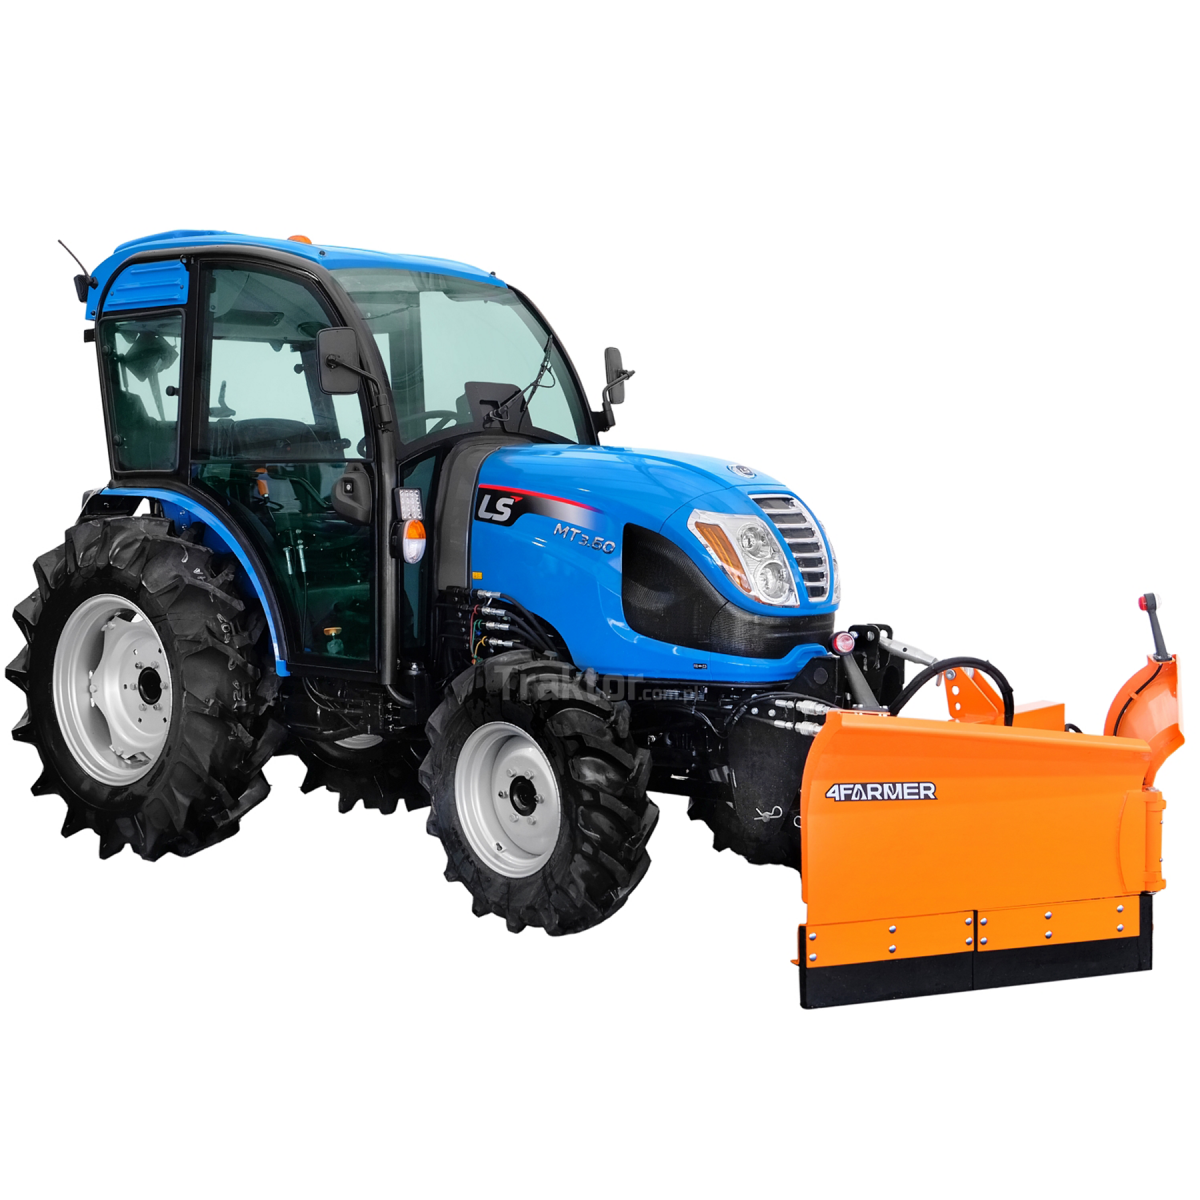 LS Tractor MT3.50 MEC 4x4 - 47 KM / CAB z klimatyzacją + Pług do śniegu strzałkowy Vario 180 cm, hydrauliczny (TUZ) 4FARMER